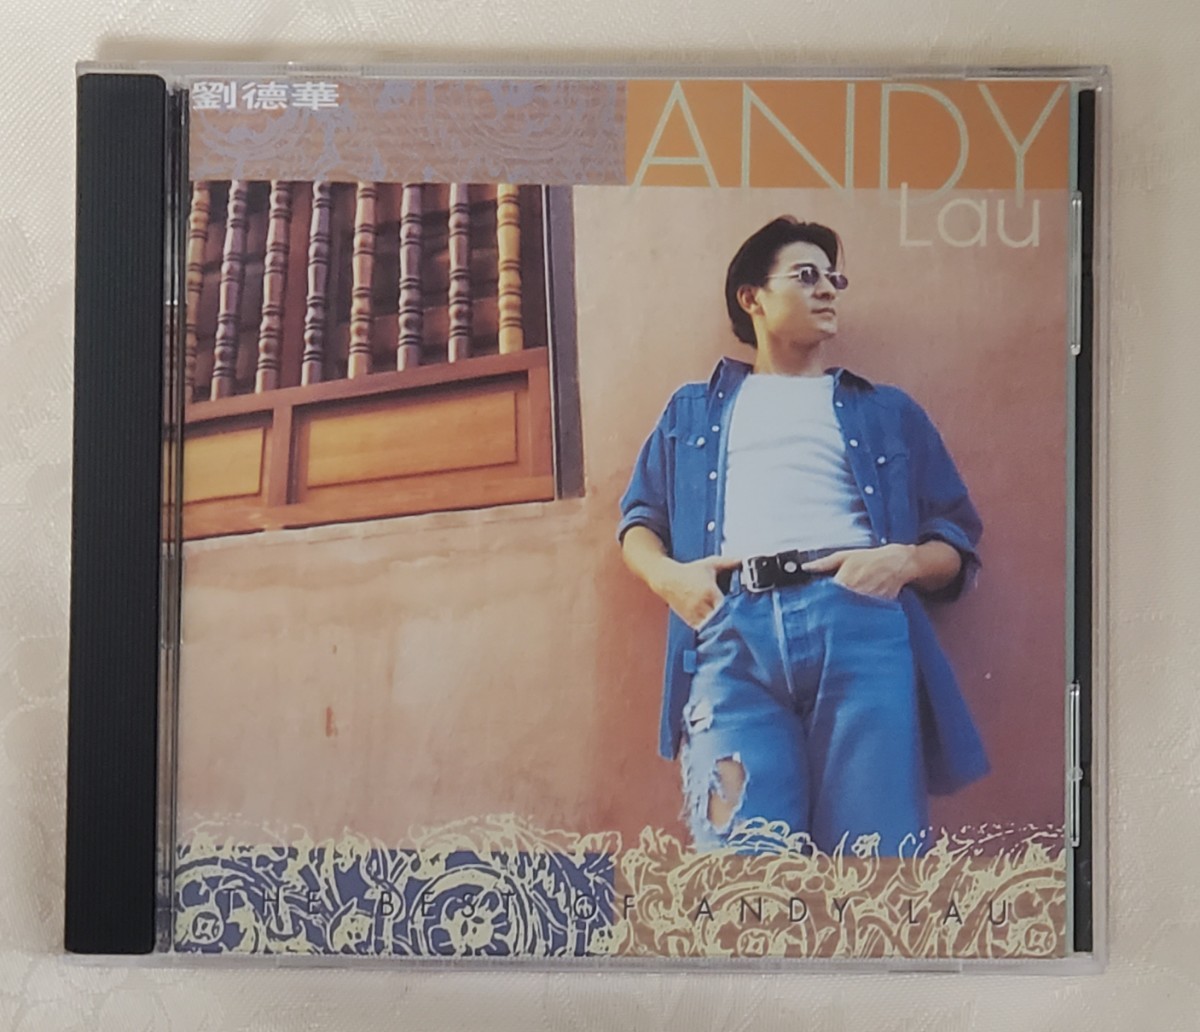 ベスト オブ アンディラウ CD Andy Lau  劉徳華 1994年発売